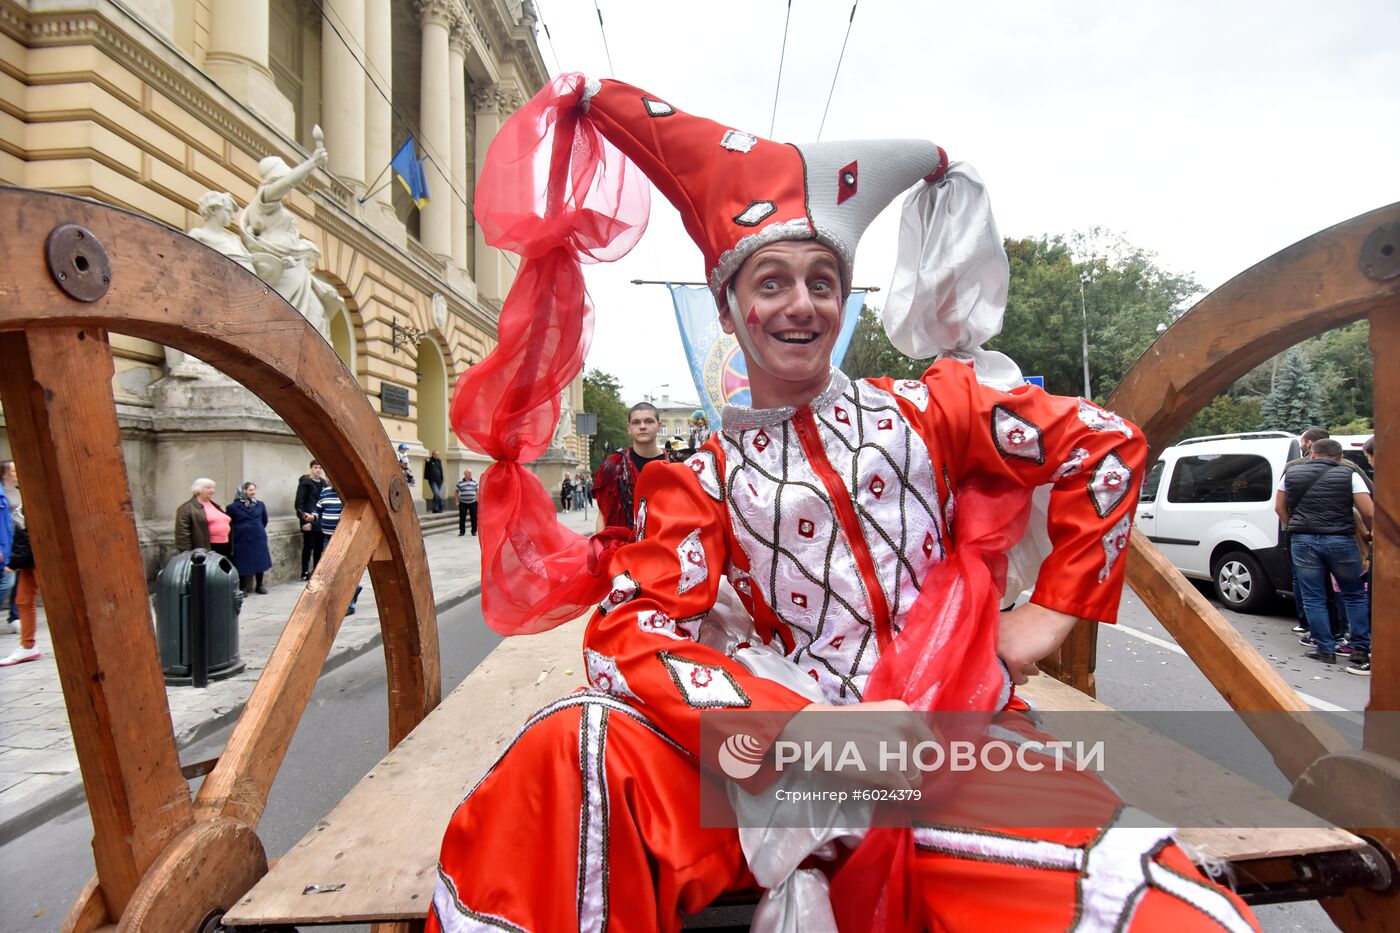 Карнавальное шествие во Львове в честь открытия фестиваля "Золотой лев"